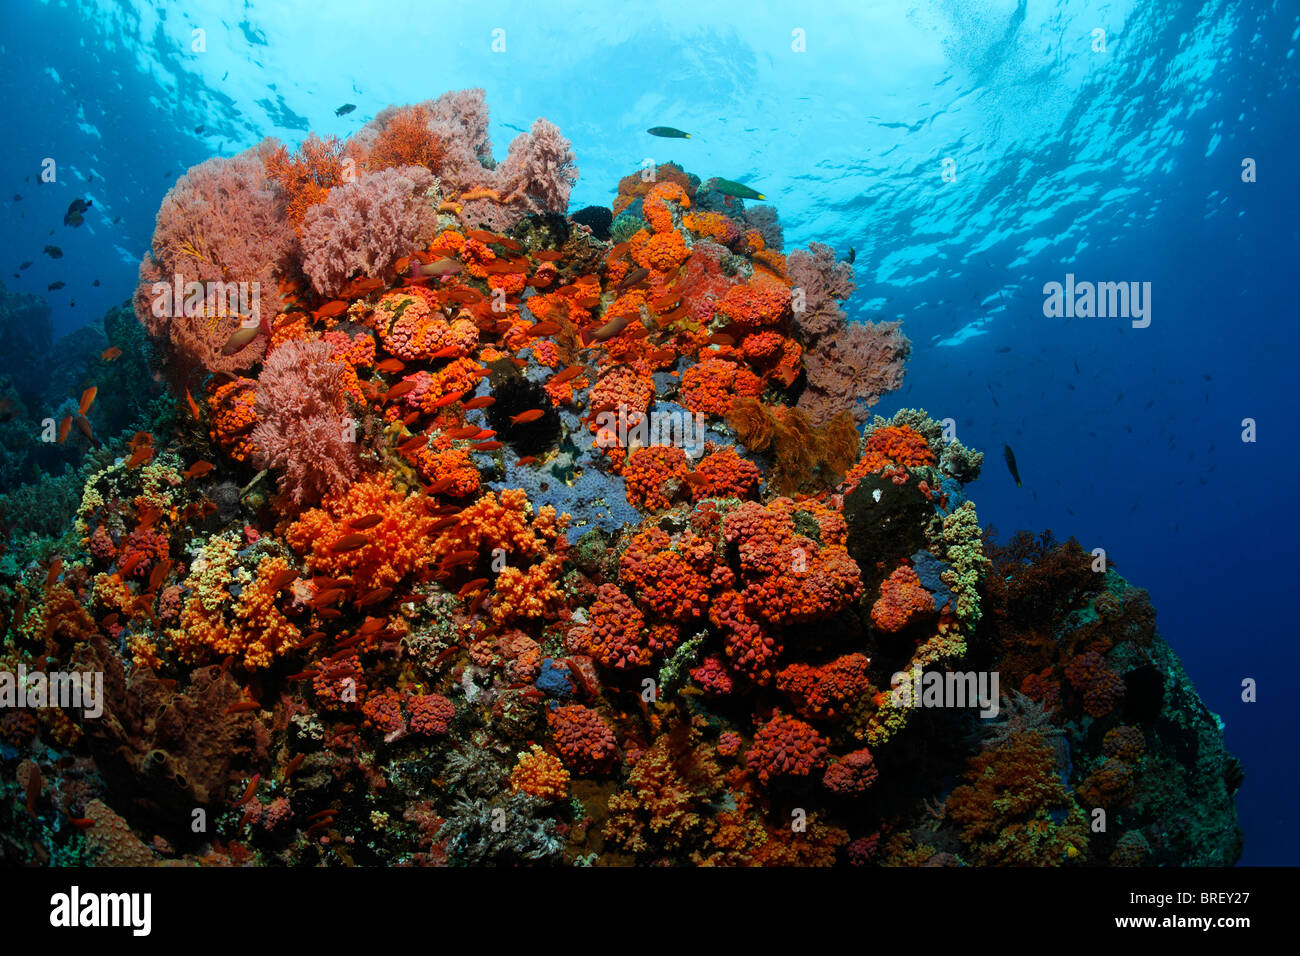 Korallen-block in einem Korallenriff mit einer Vielzahl von roten Gorgonien (auch Melithaea), Tubastrea-Korallen und Fairy Basslets (Antiidae) Stockfoto